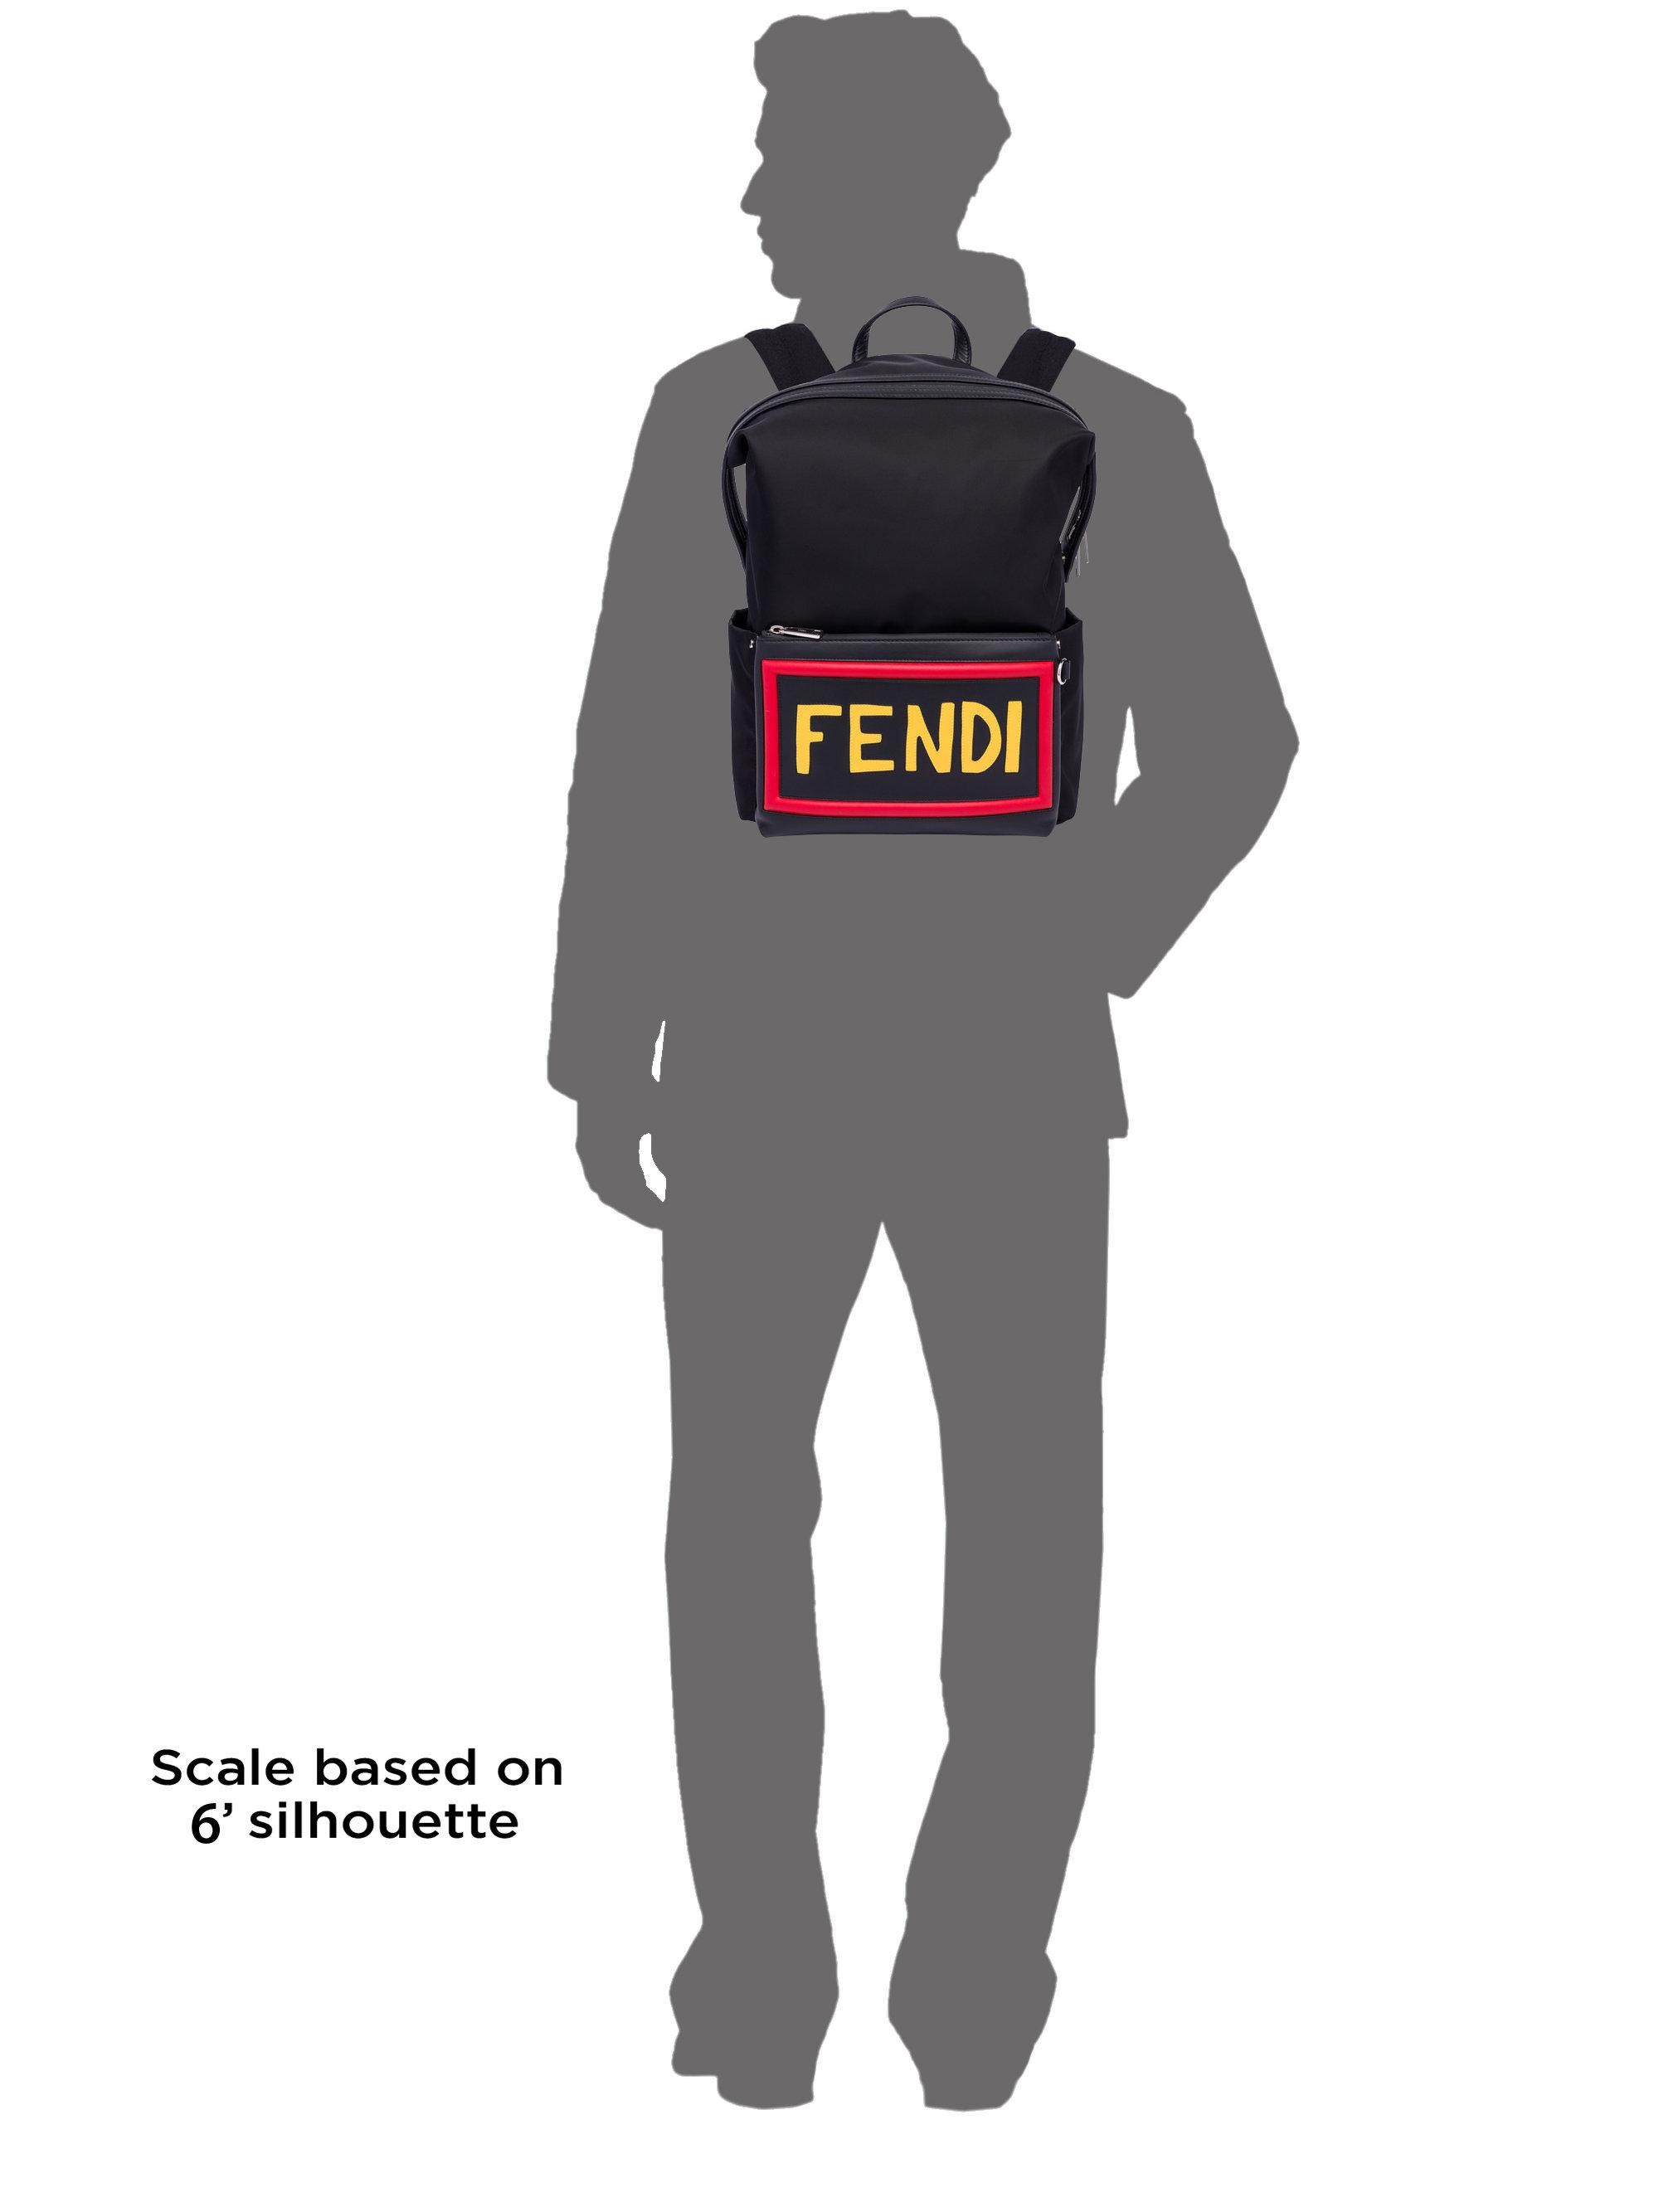 fendi hope backpack